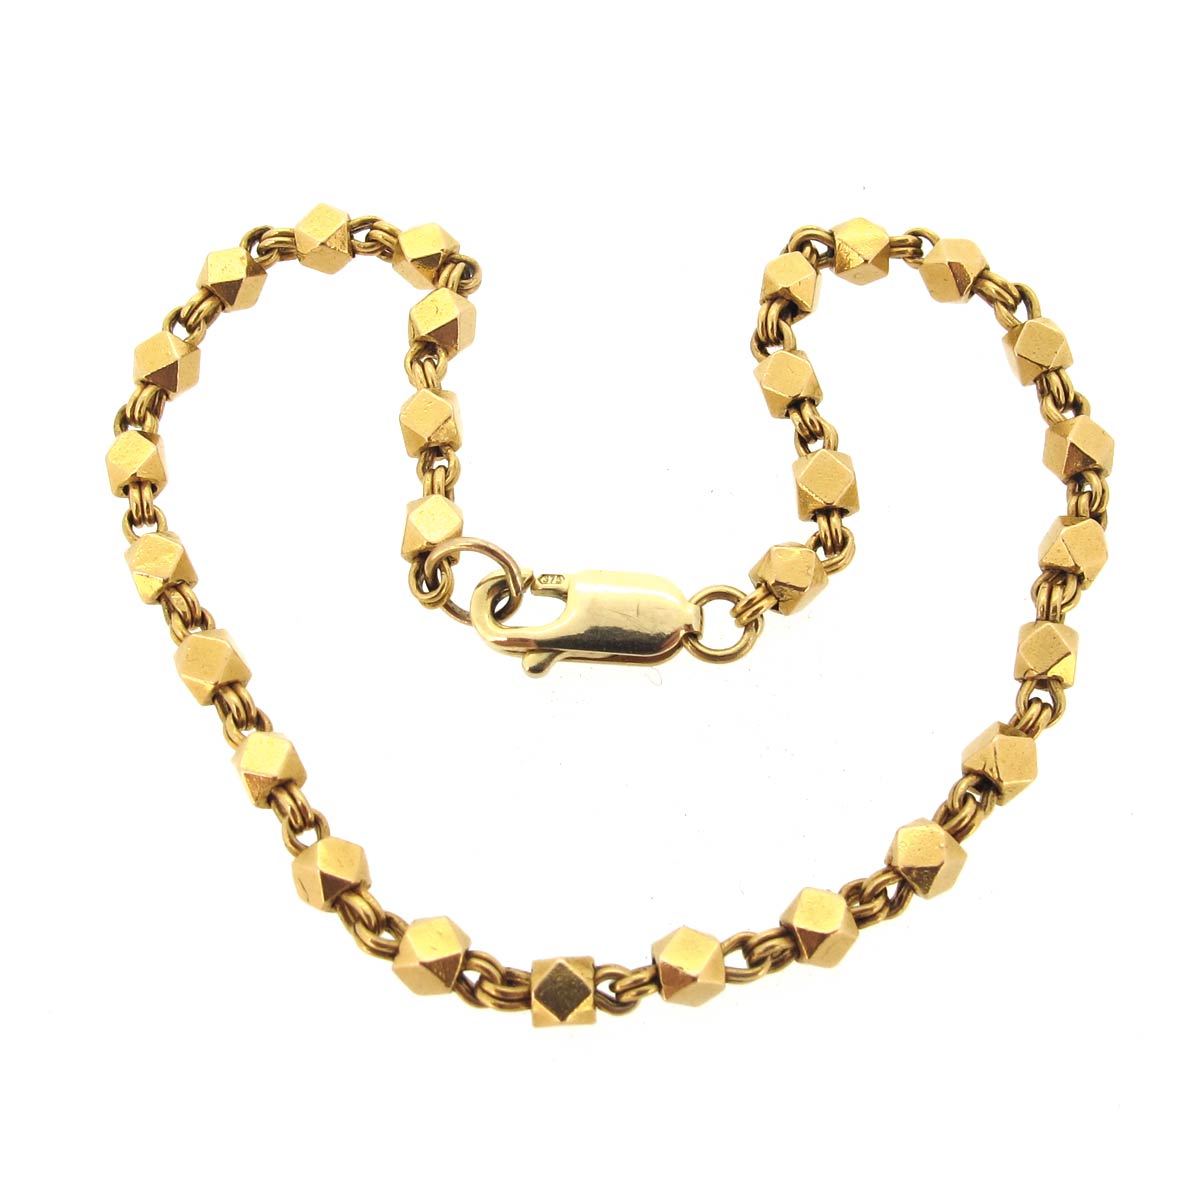 Pednekar Jewellers - MADE TO ORDER ROSE GOLD BRACELET Wt.12 grams | Facebook